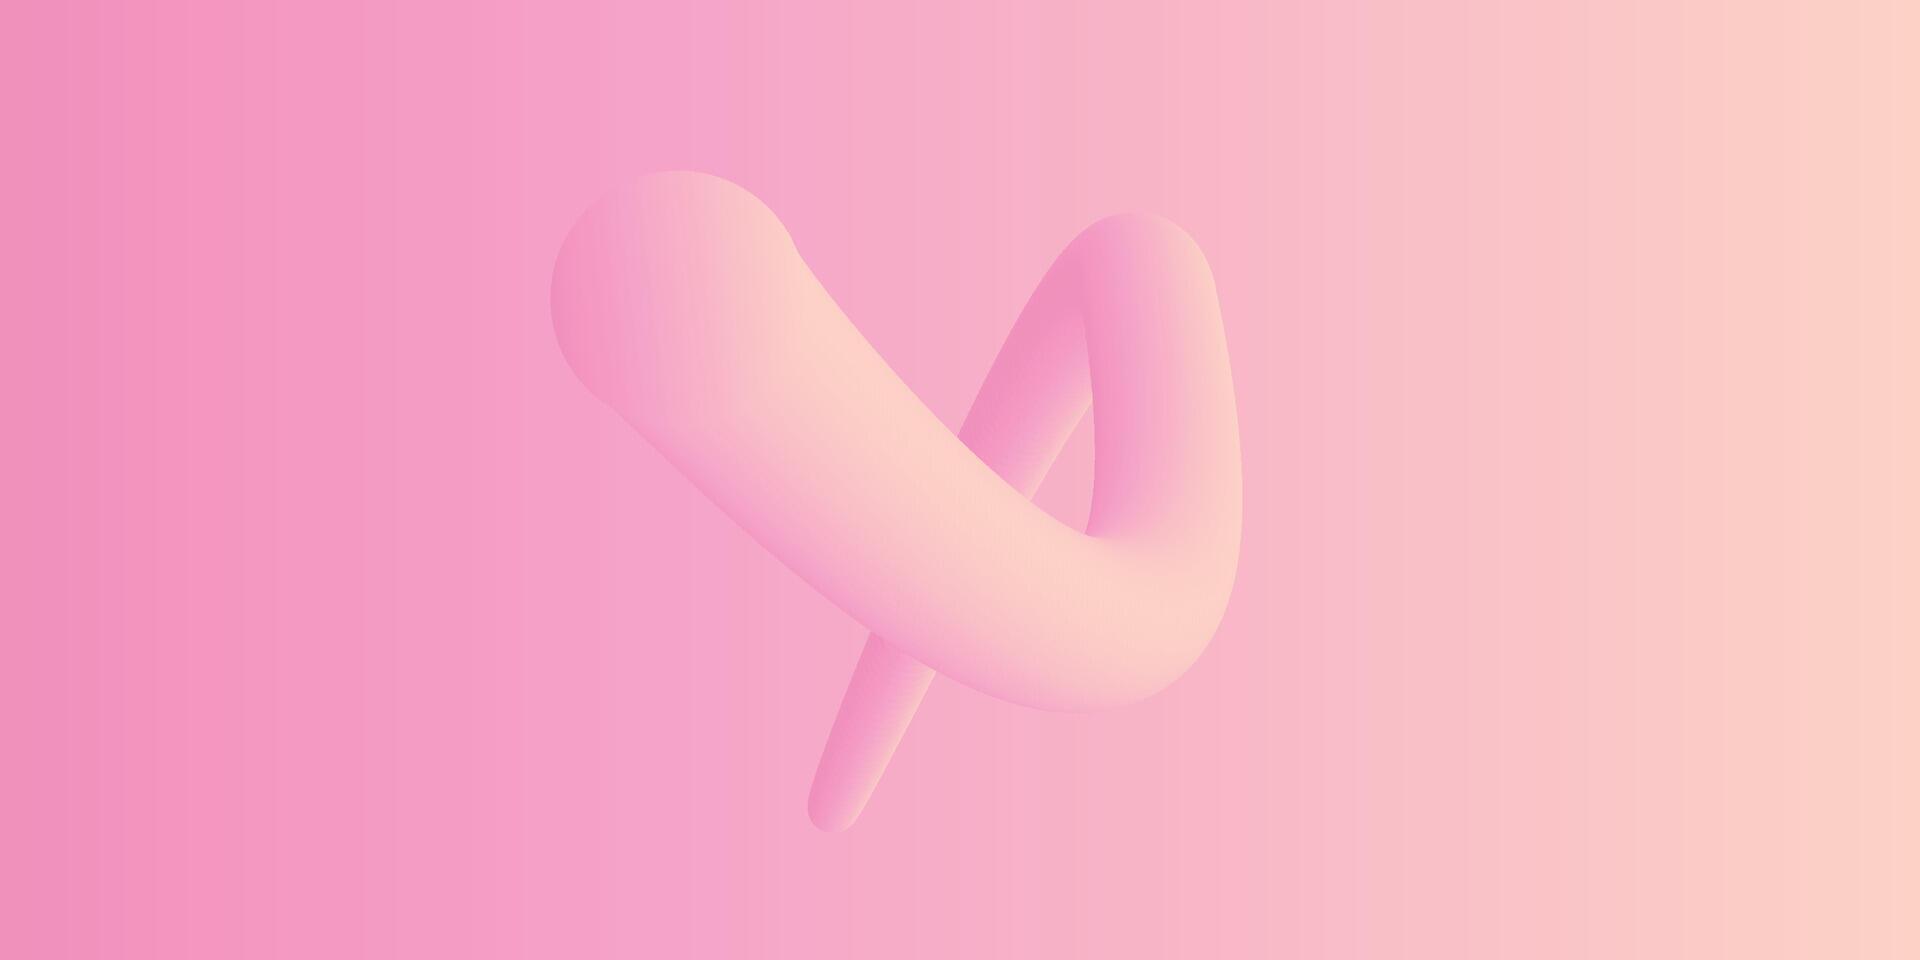 abstrakt 3d flytande vätska rosa Färg bakgrund. kreativ minimal sfär bollar eller bubbla trendig färgrik lutning design för omslag broschyr, flygblad, affisch, baner webb. vektor